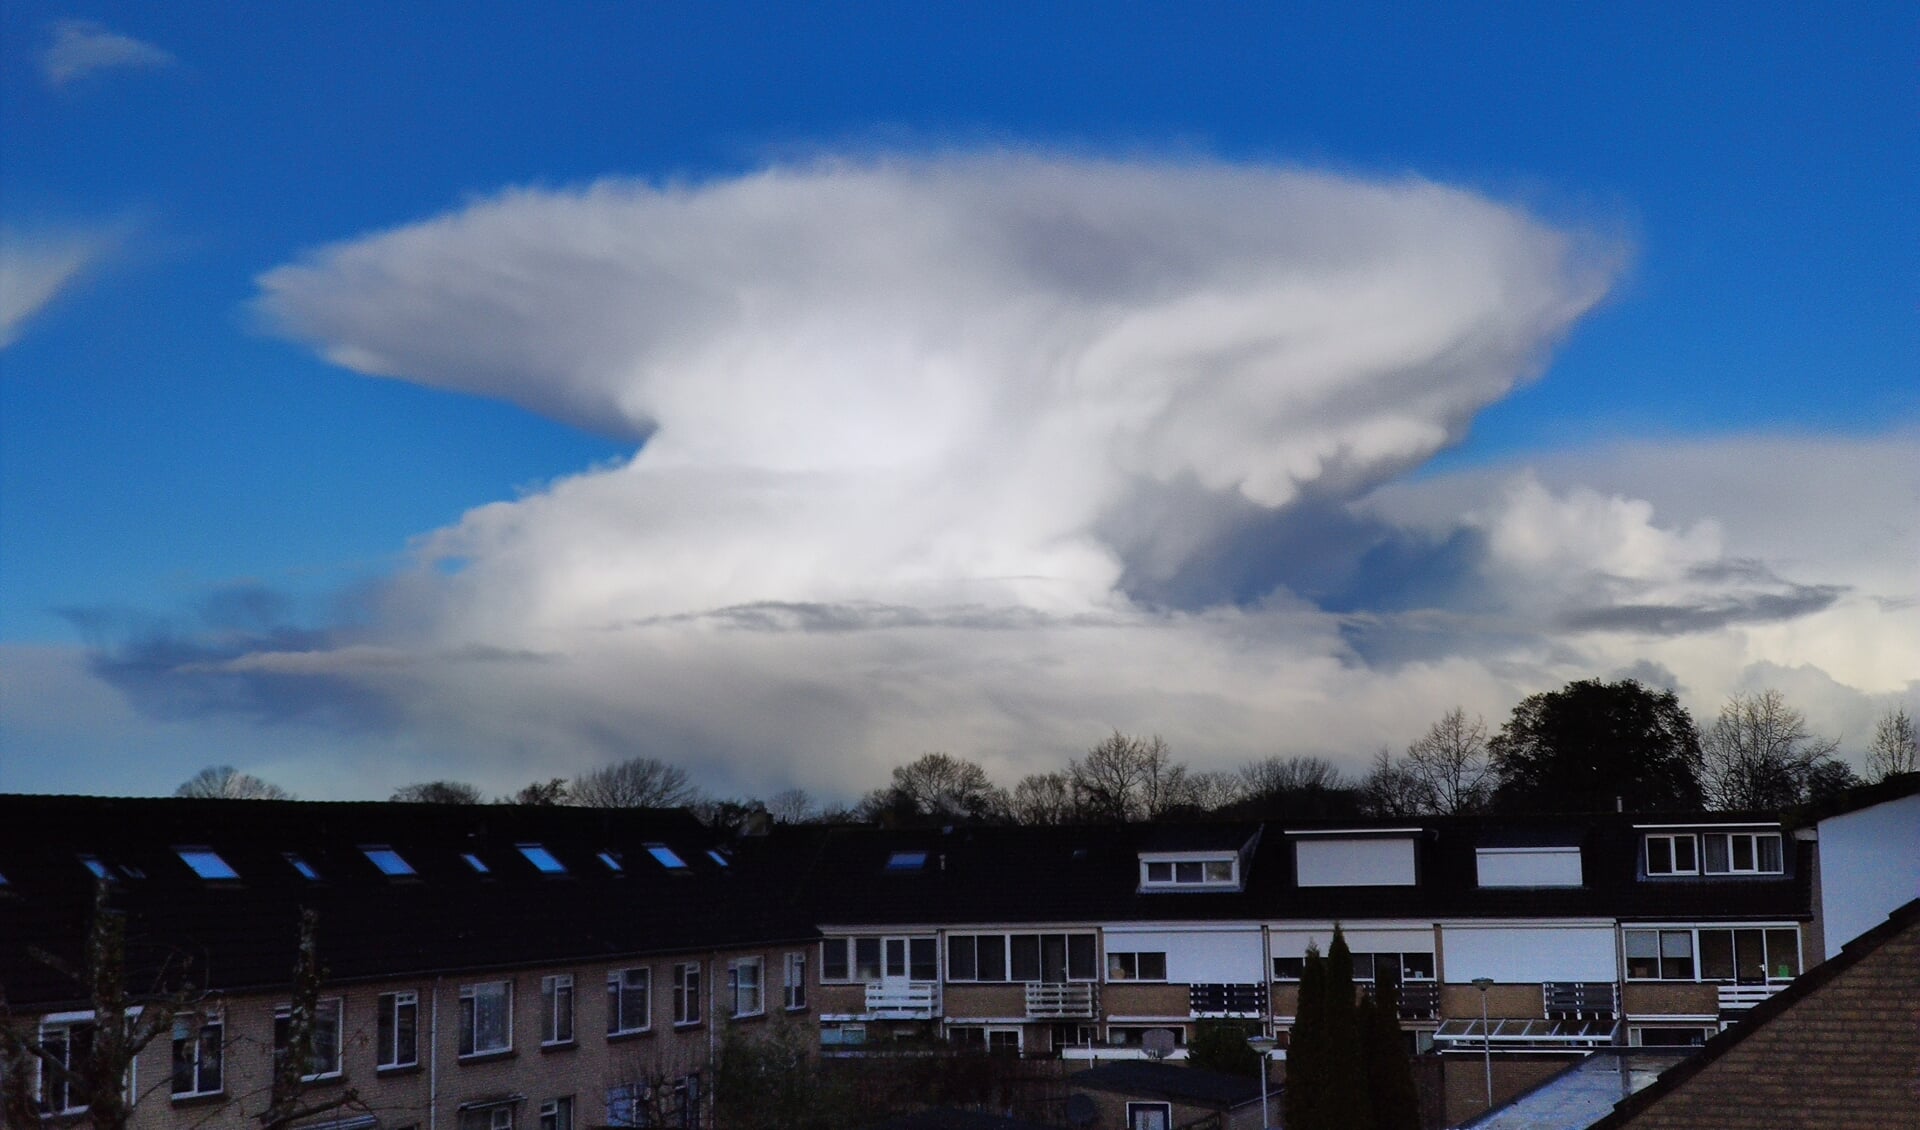 Afgeplatte cumulus nimbus door een koude inversie laag boven de wolk.